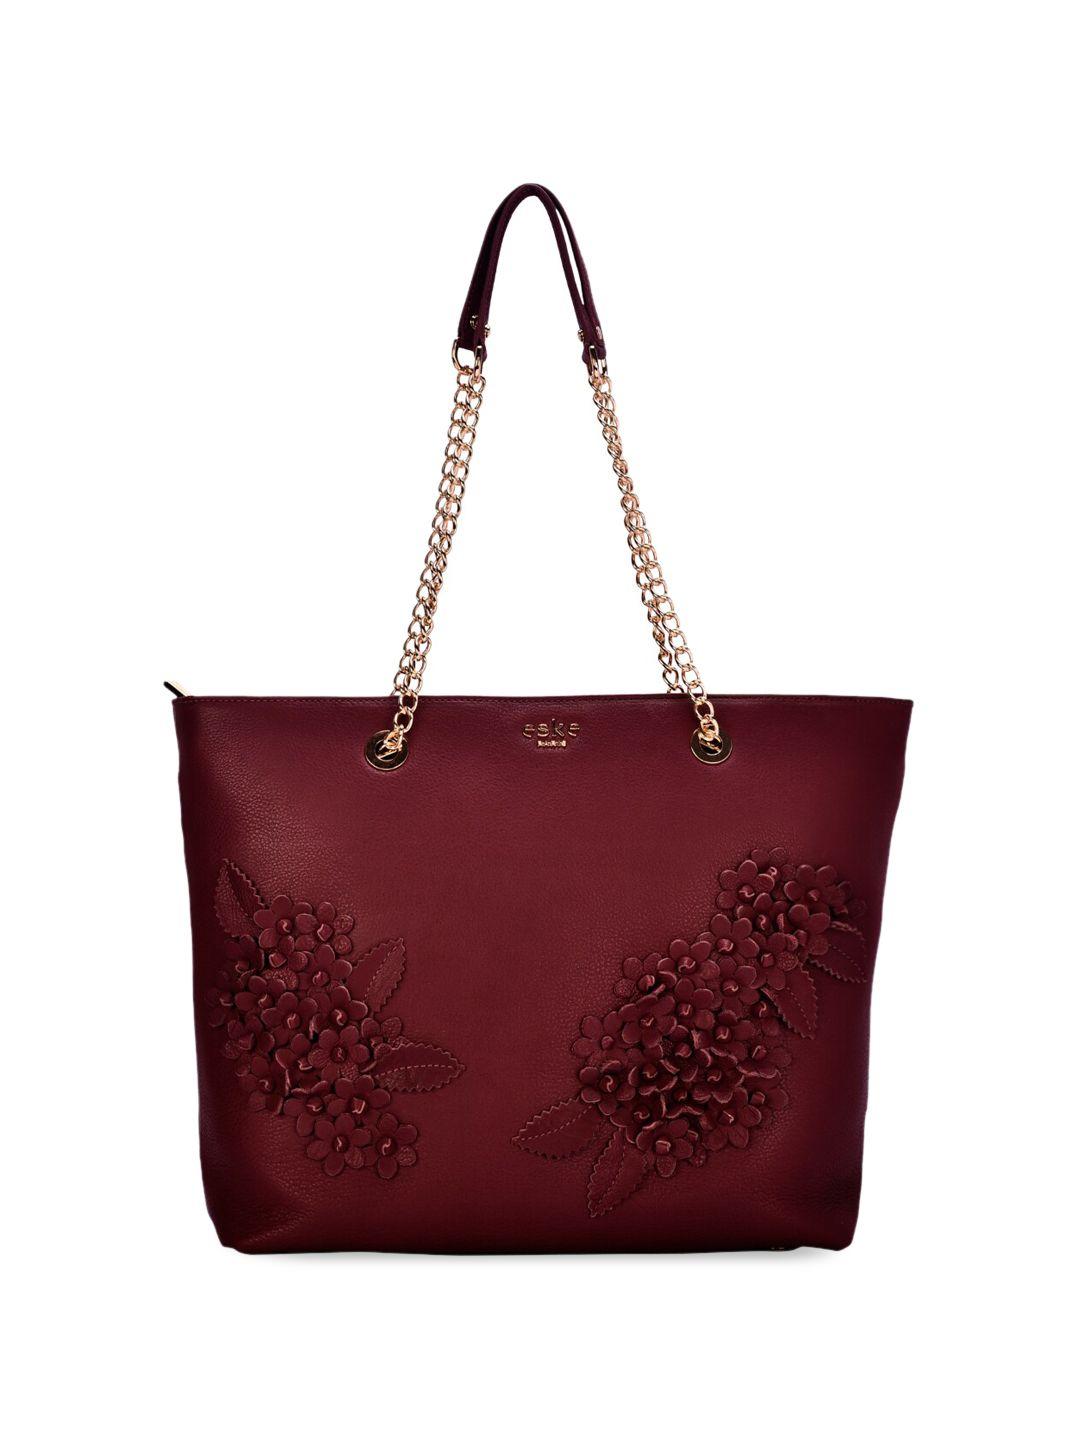 eske floral embellished leather structured shoulder bag with applique work